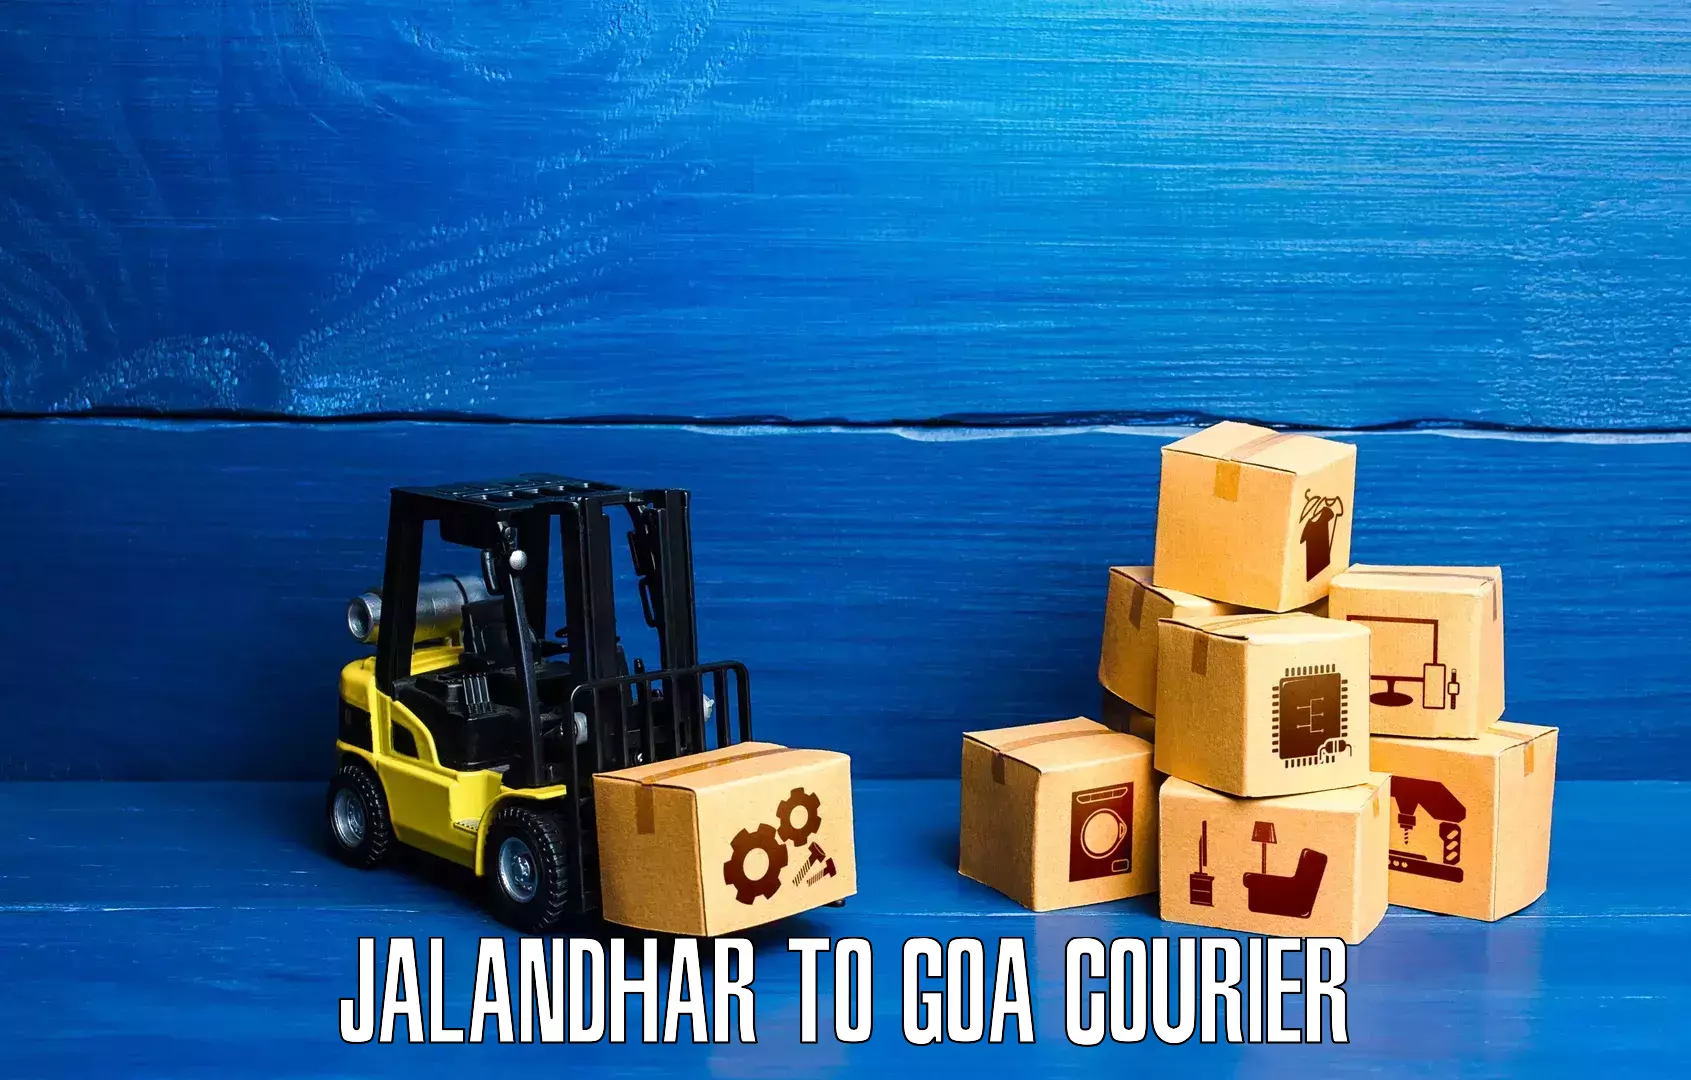 24/7 courier service Jalandhar to Ponda